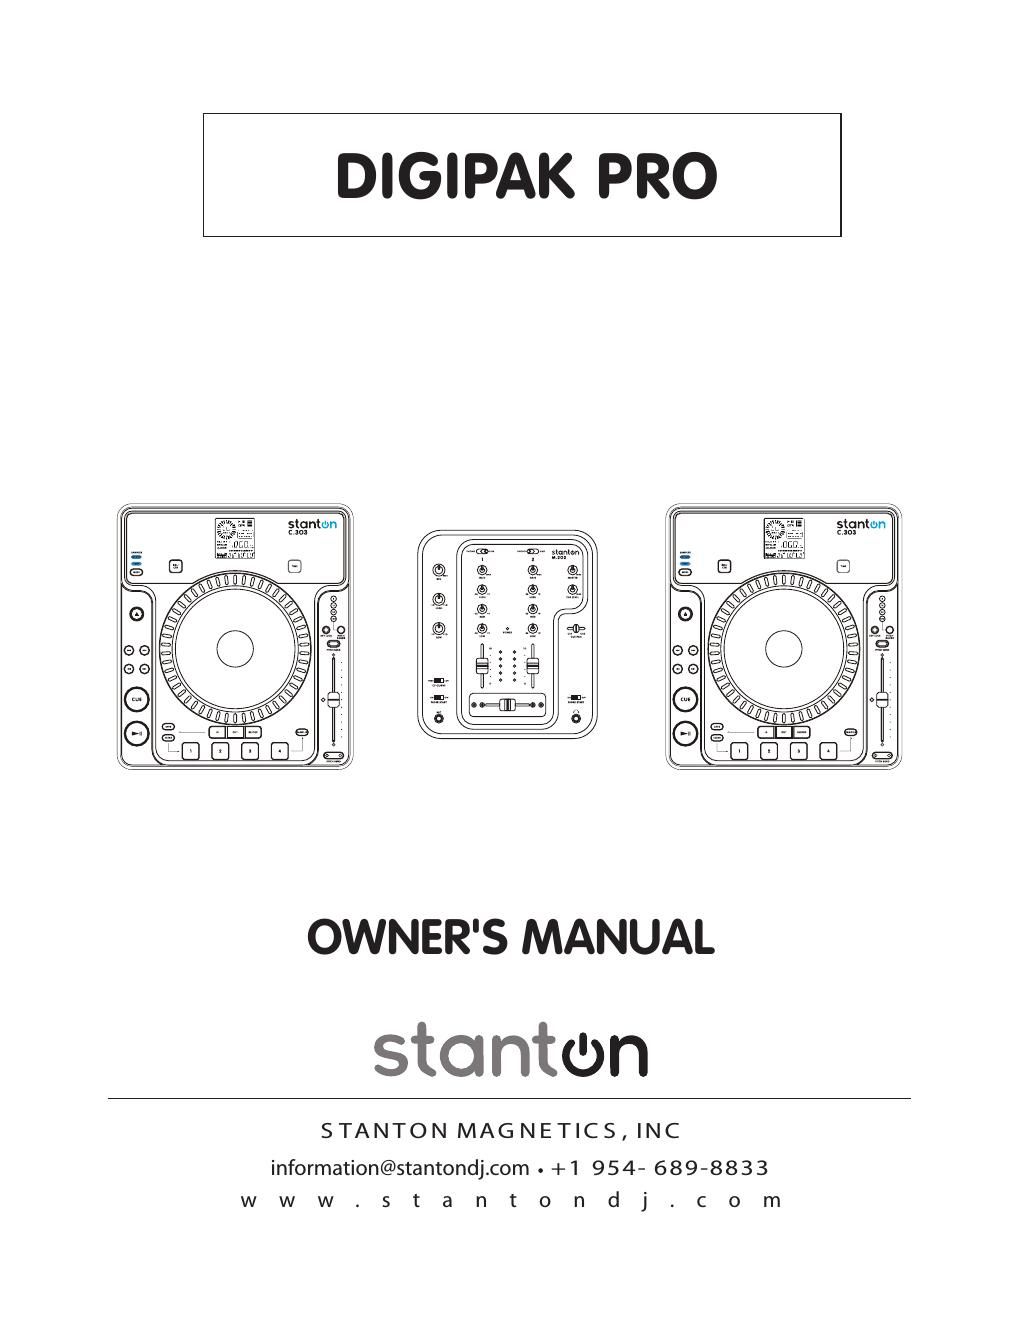 stanton digipak pro owners manual